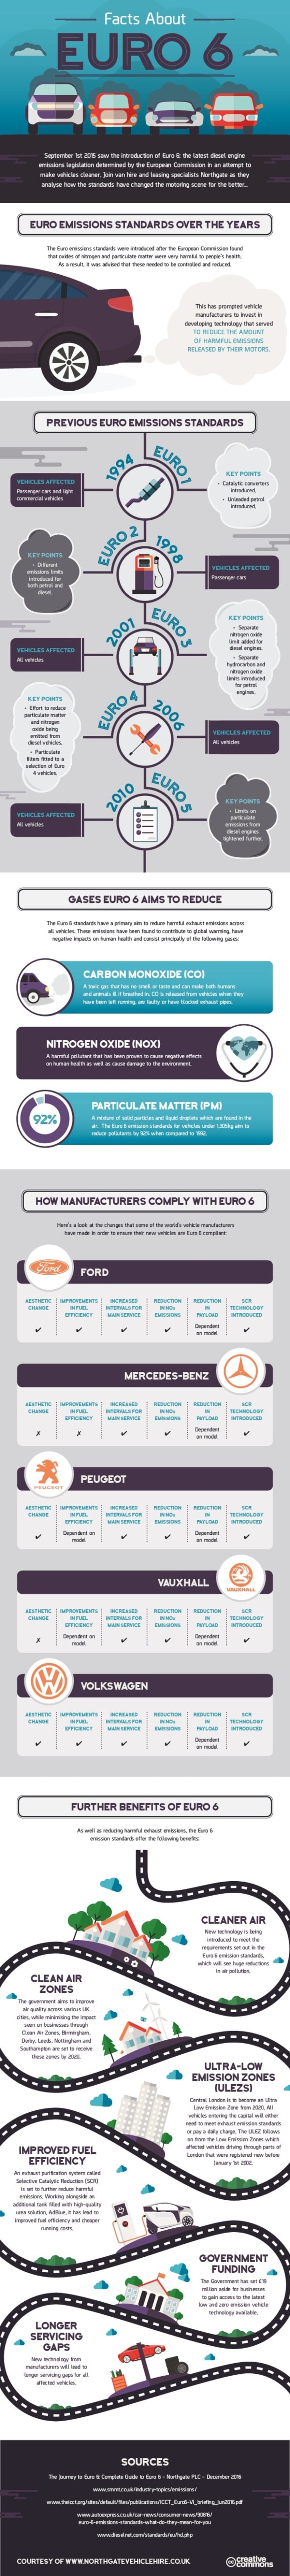 Understanding Euro 6 diesels